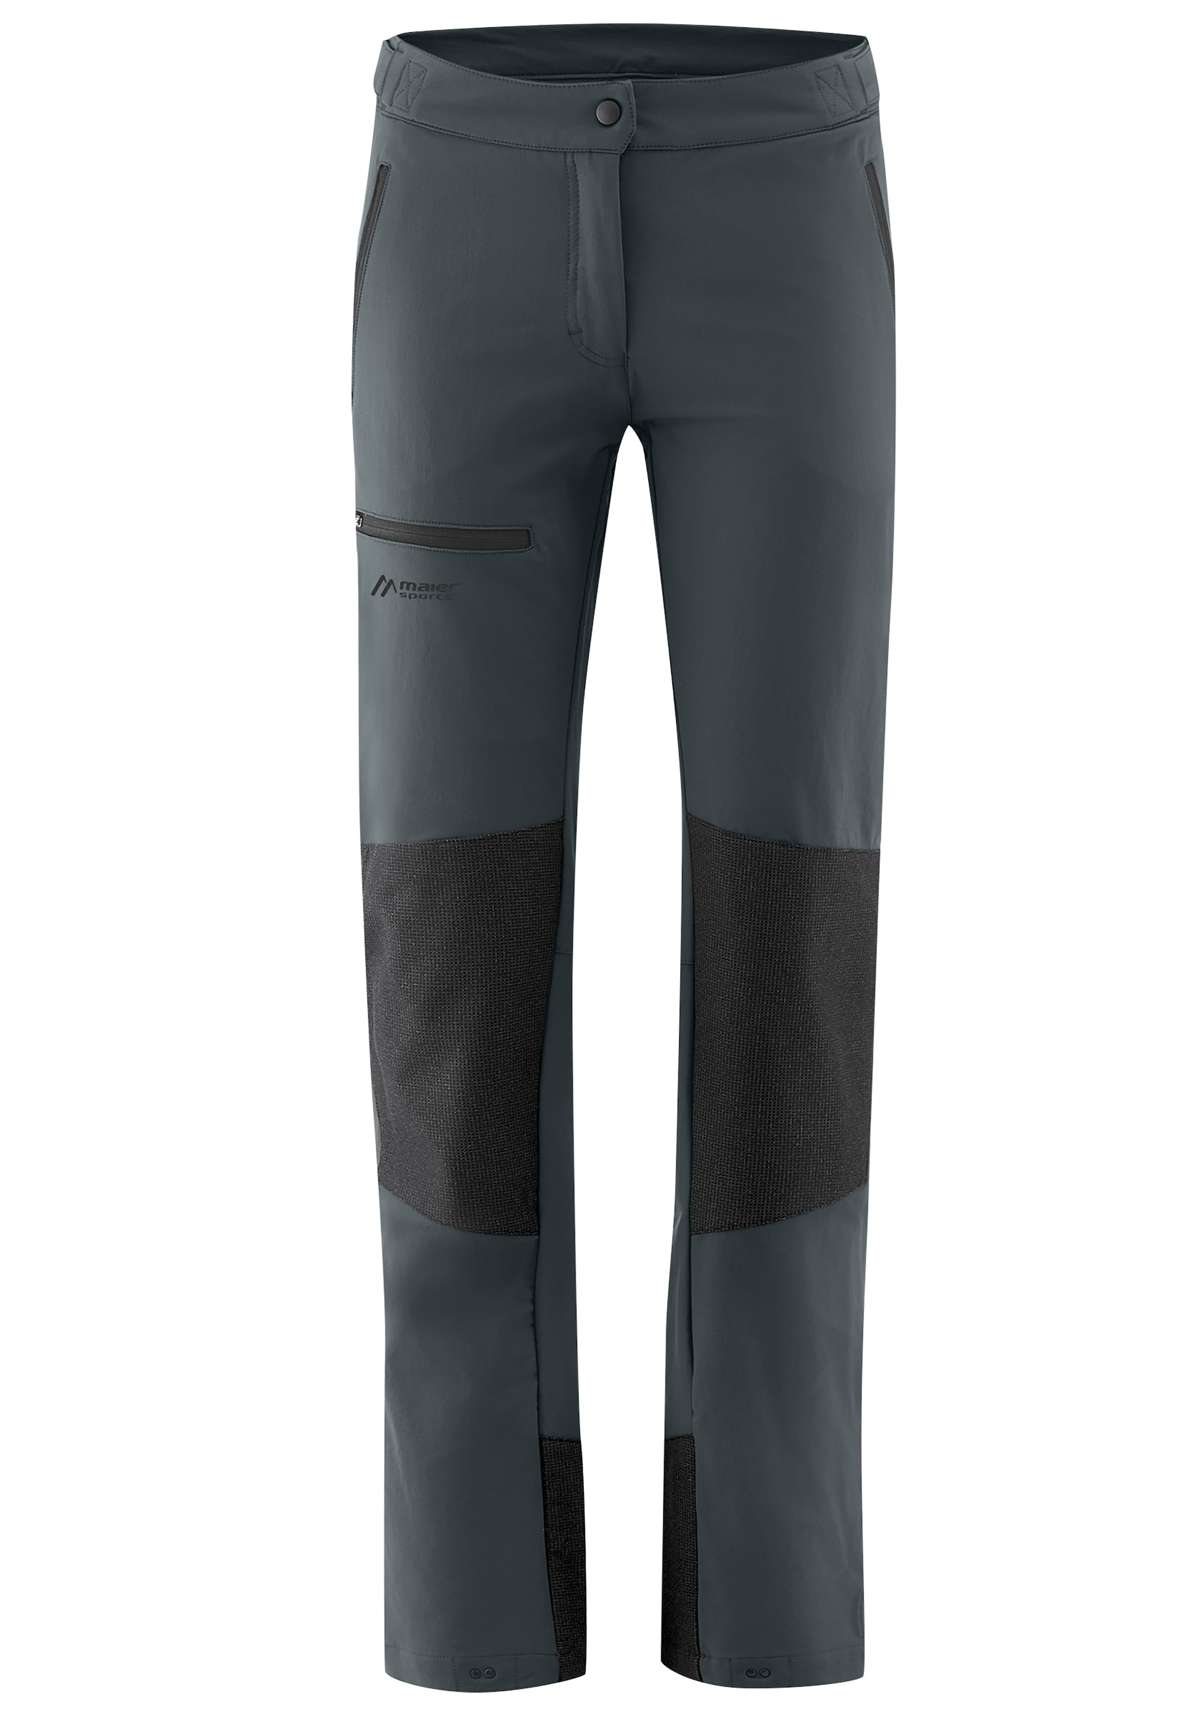 Функциональные брюки, идеальные для альпийских туров.